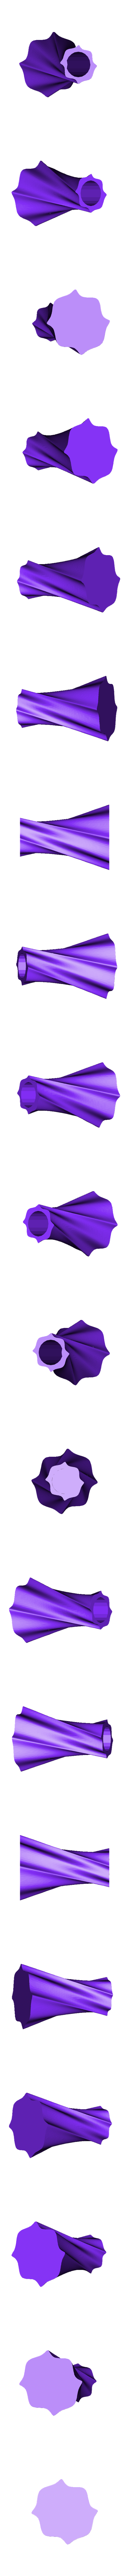 Cool Lappi.stl Télécharger fichier STL gratuit POT DE FLEUR /flower pot/ Maison /decoration/ Lifestyle/ artistique torsadé vase • Plan imprimable en 3D, Mathias_Cst07